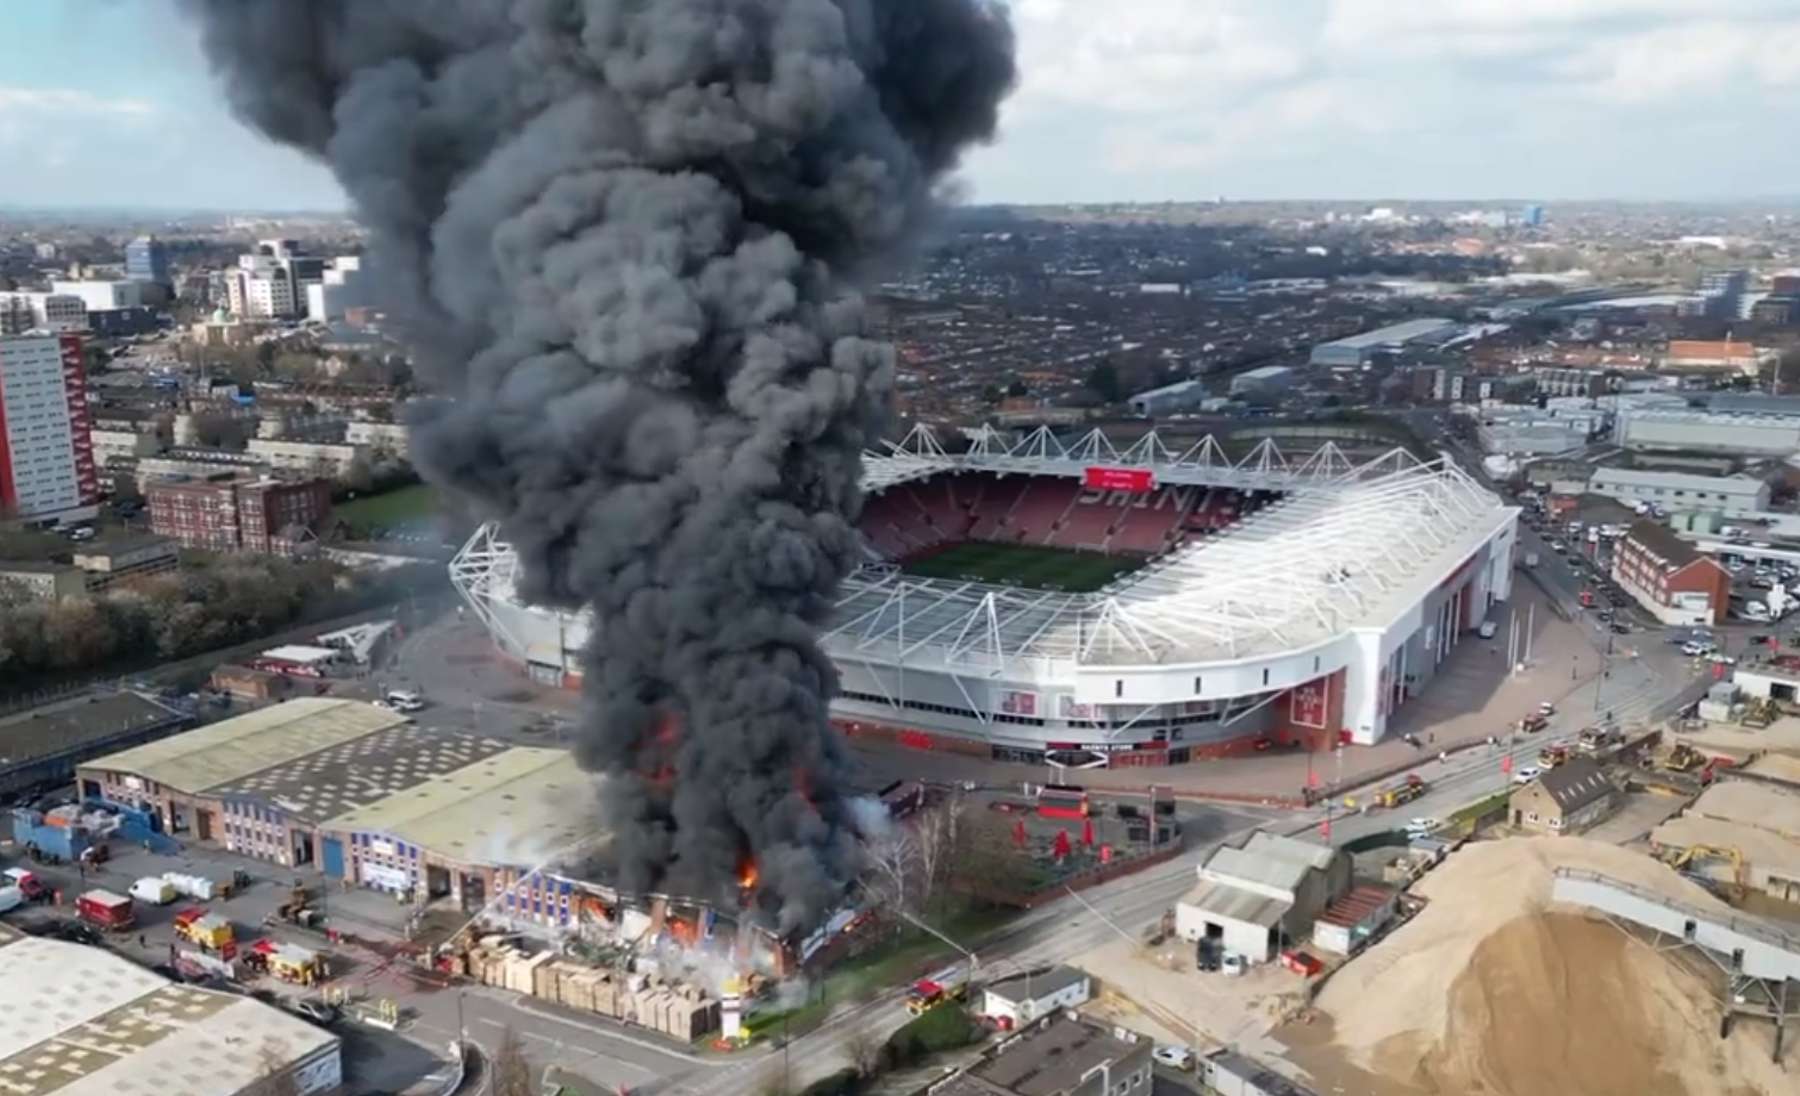 St Mary's Stadiumi ees on suur põleng